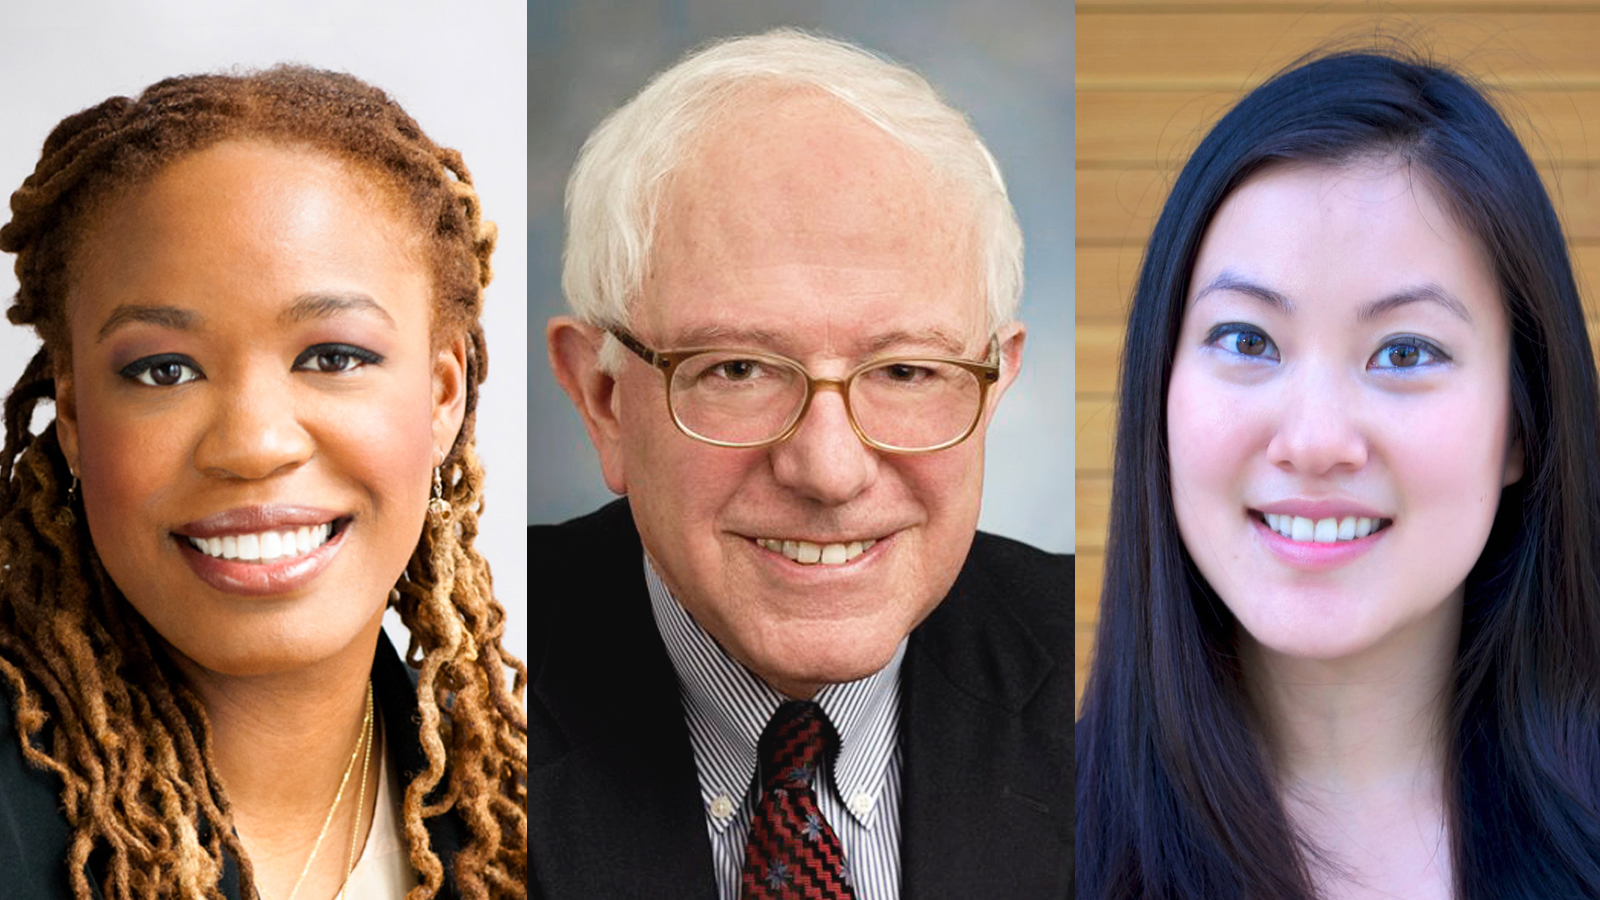 Heather McGhee, Bernie Sanders, and Angel Hsu